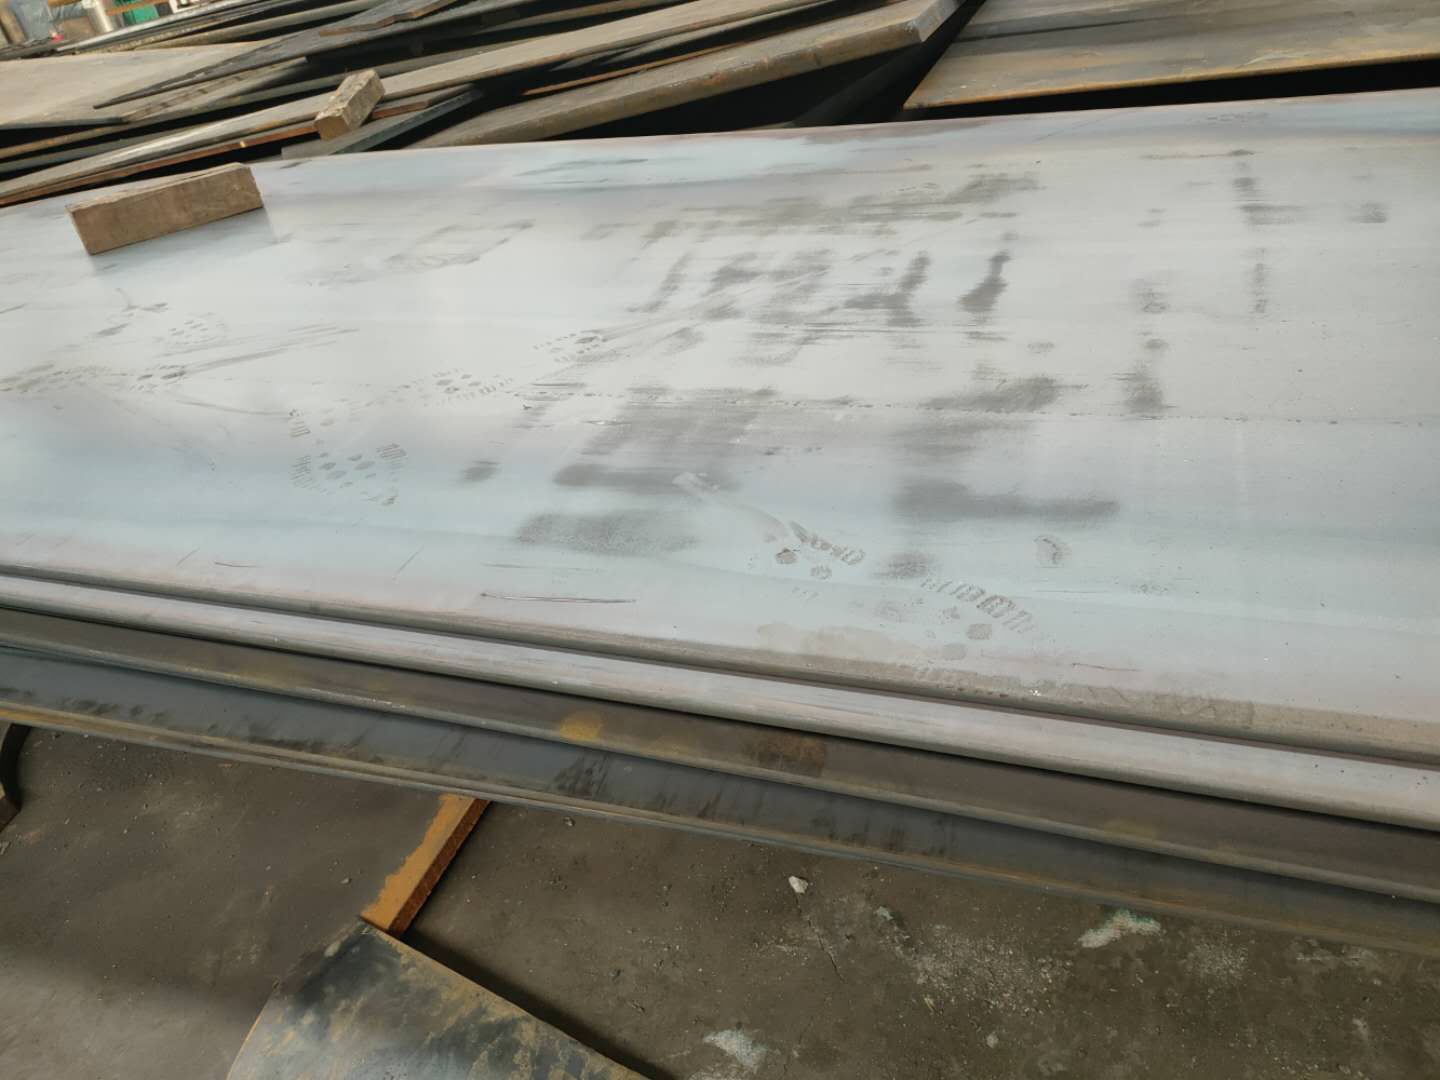 聊城市Q620C钢板厂家现货Q620C钢板厂家直销 Q620C钢板规格齐全 Q620C钢板价格